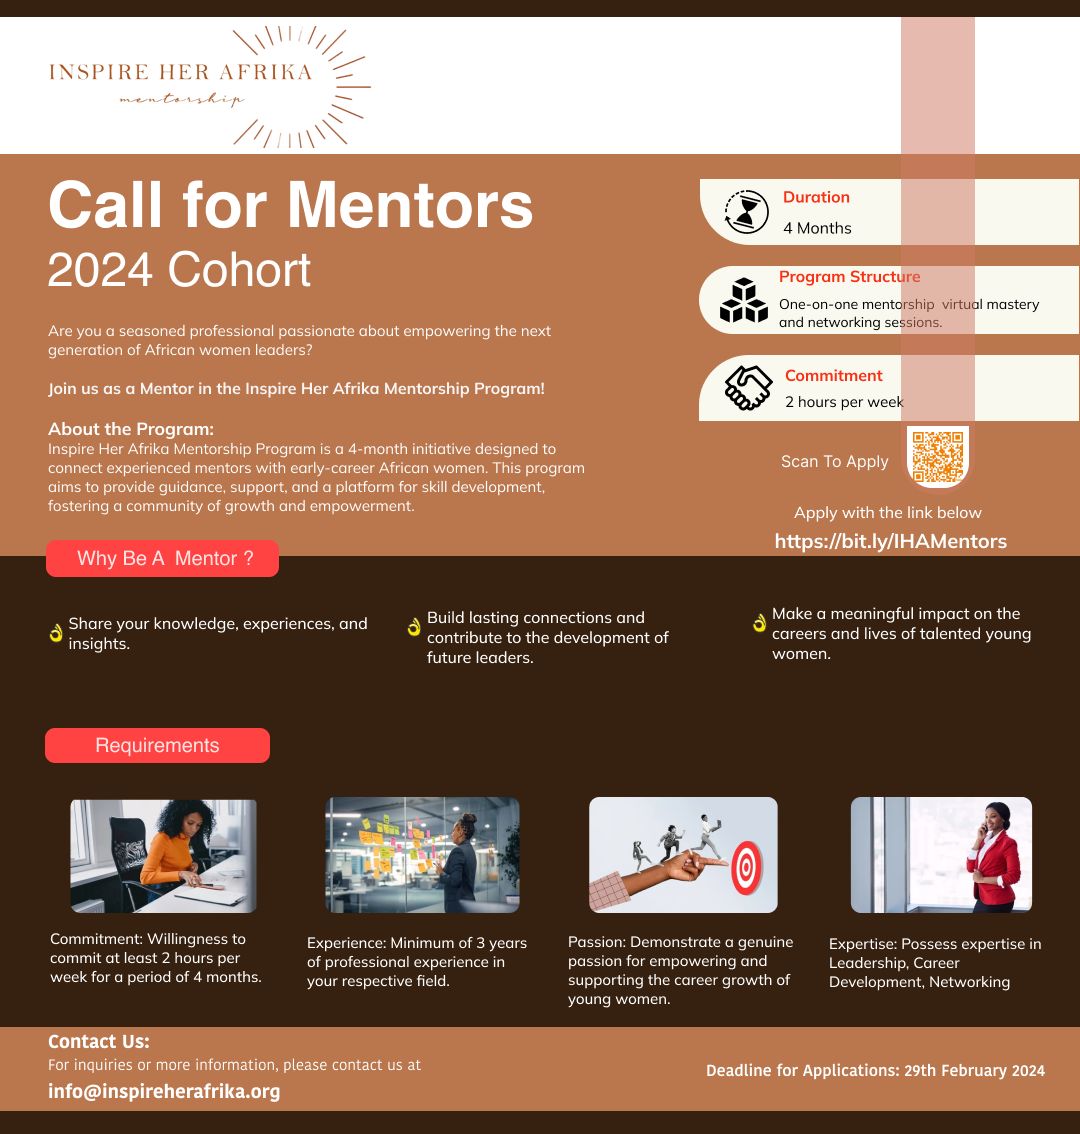 Call for Mentors: Inspire Her Afrika Mentorship Program 2024